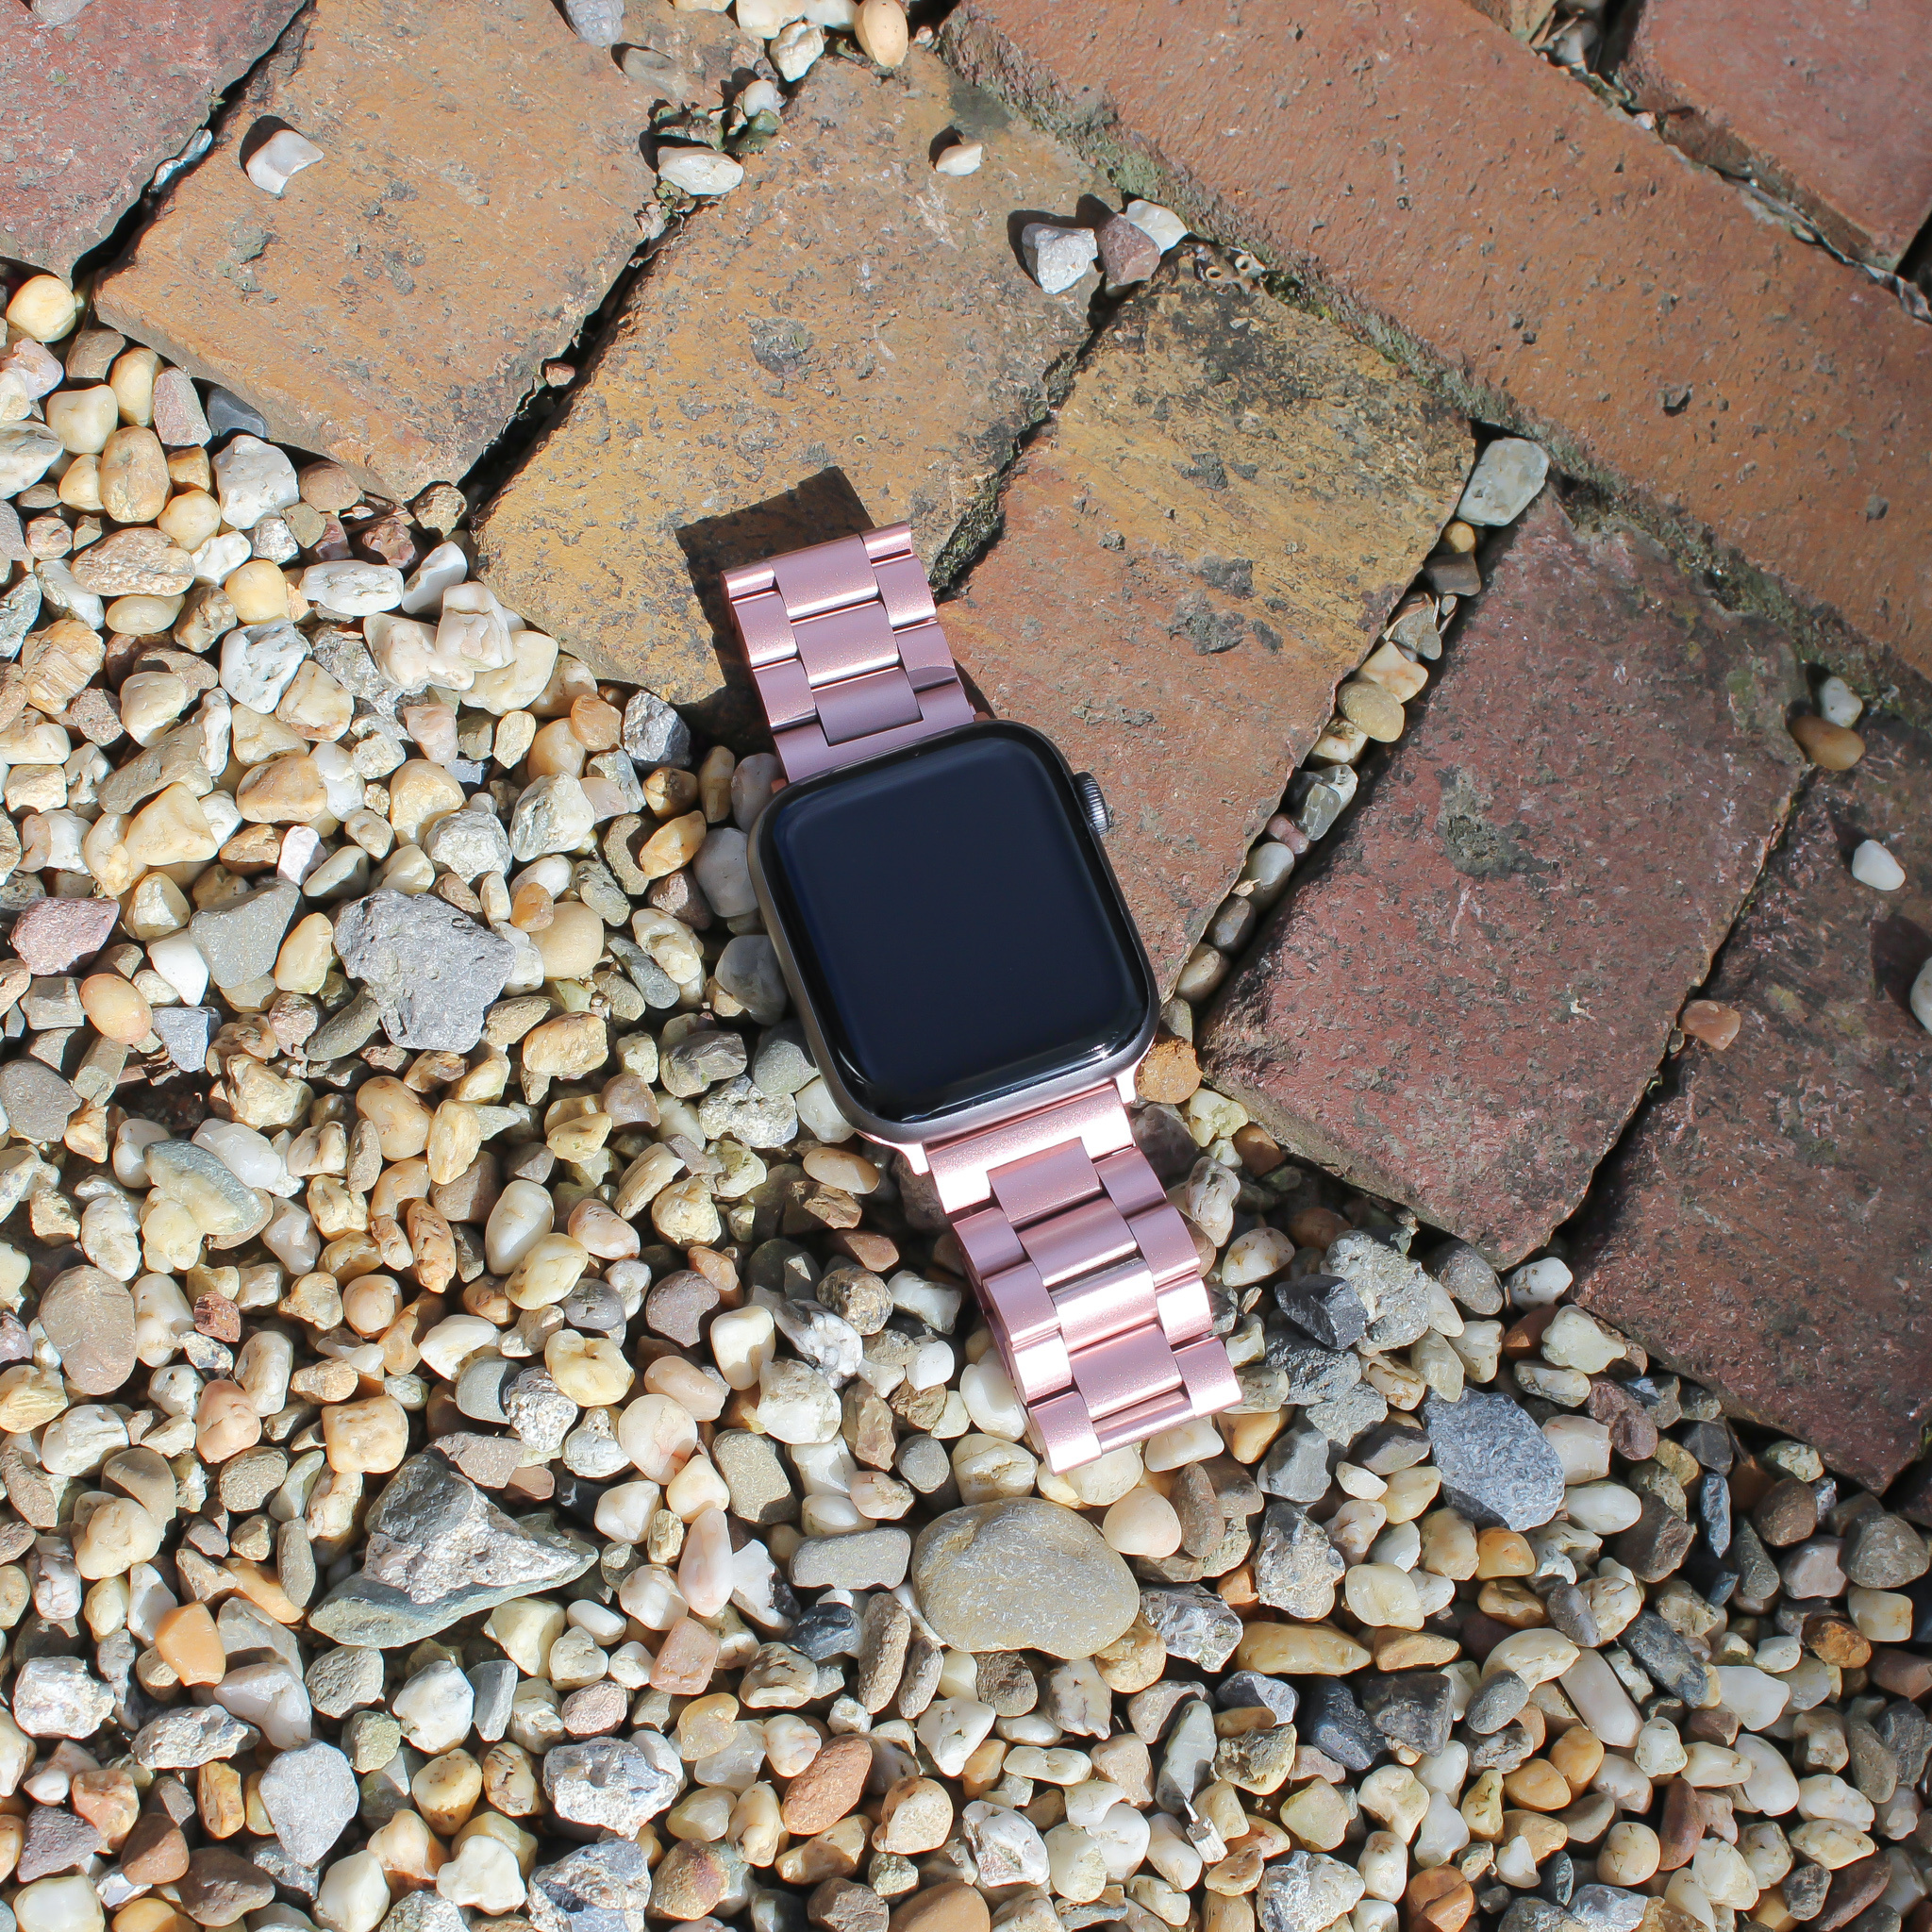 Cinturino a maglie in acciaio con perline per Apple Watch - rosa rossa